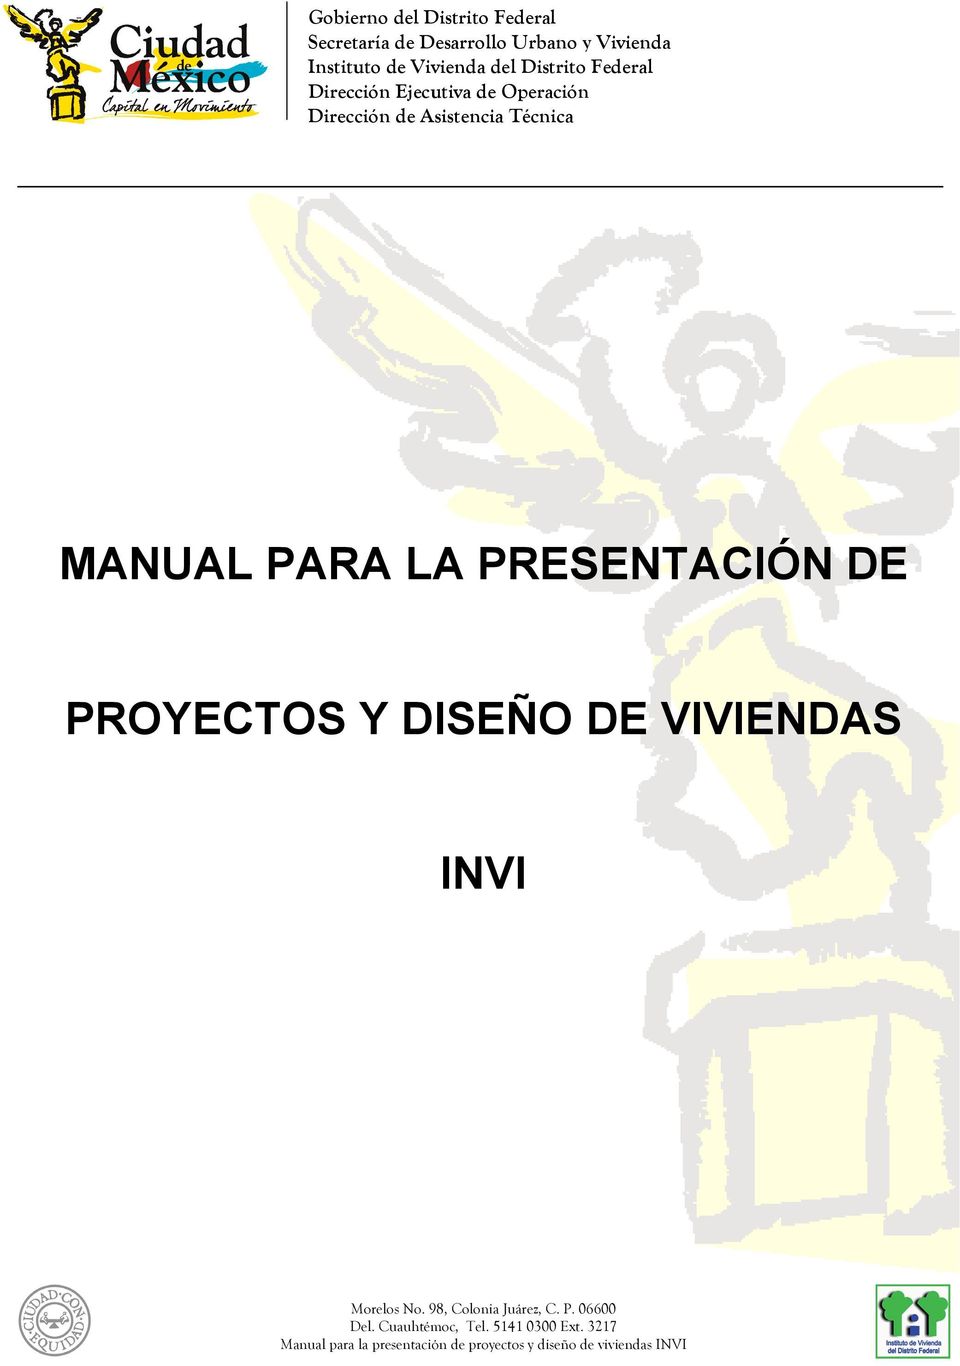 INVI Manual para la presentación